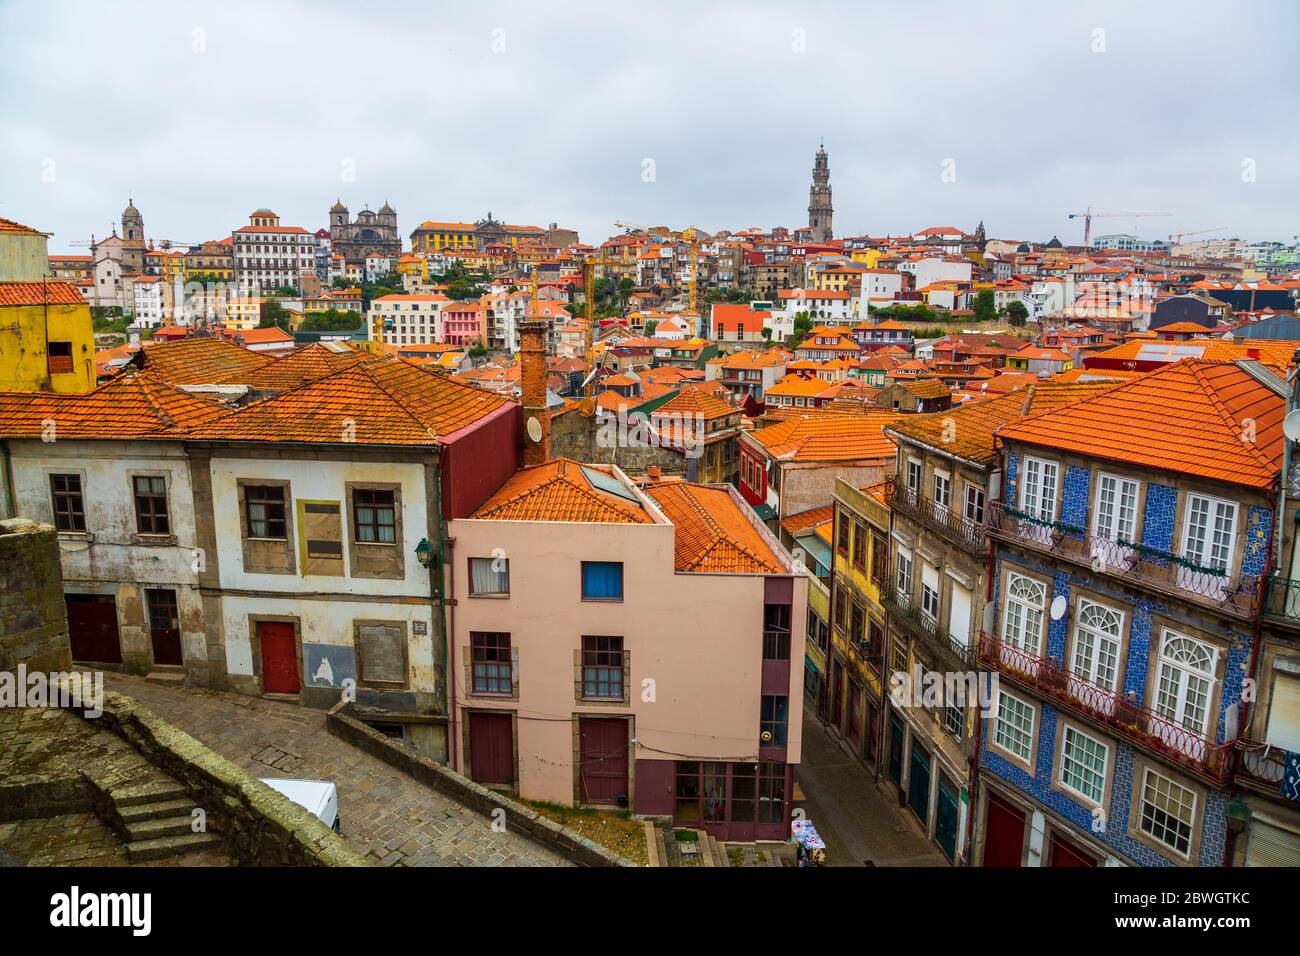 Bellissimo panorama degli edifici storici della città vecchia di Porto, Portogallo Foto Stock